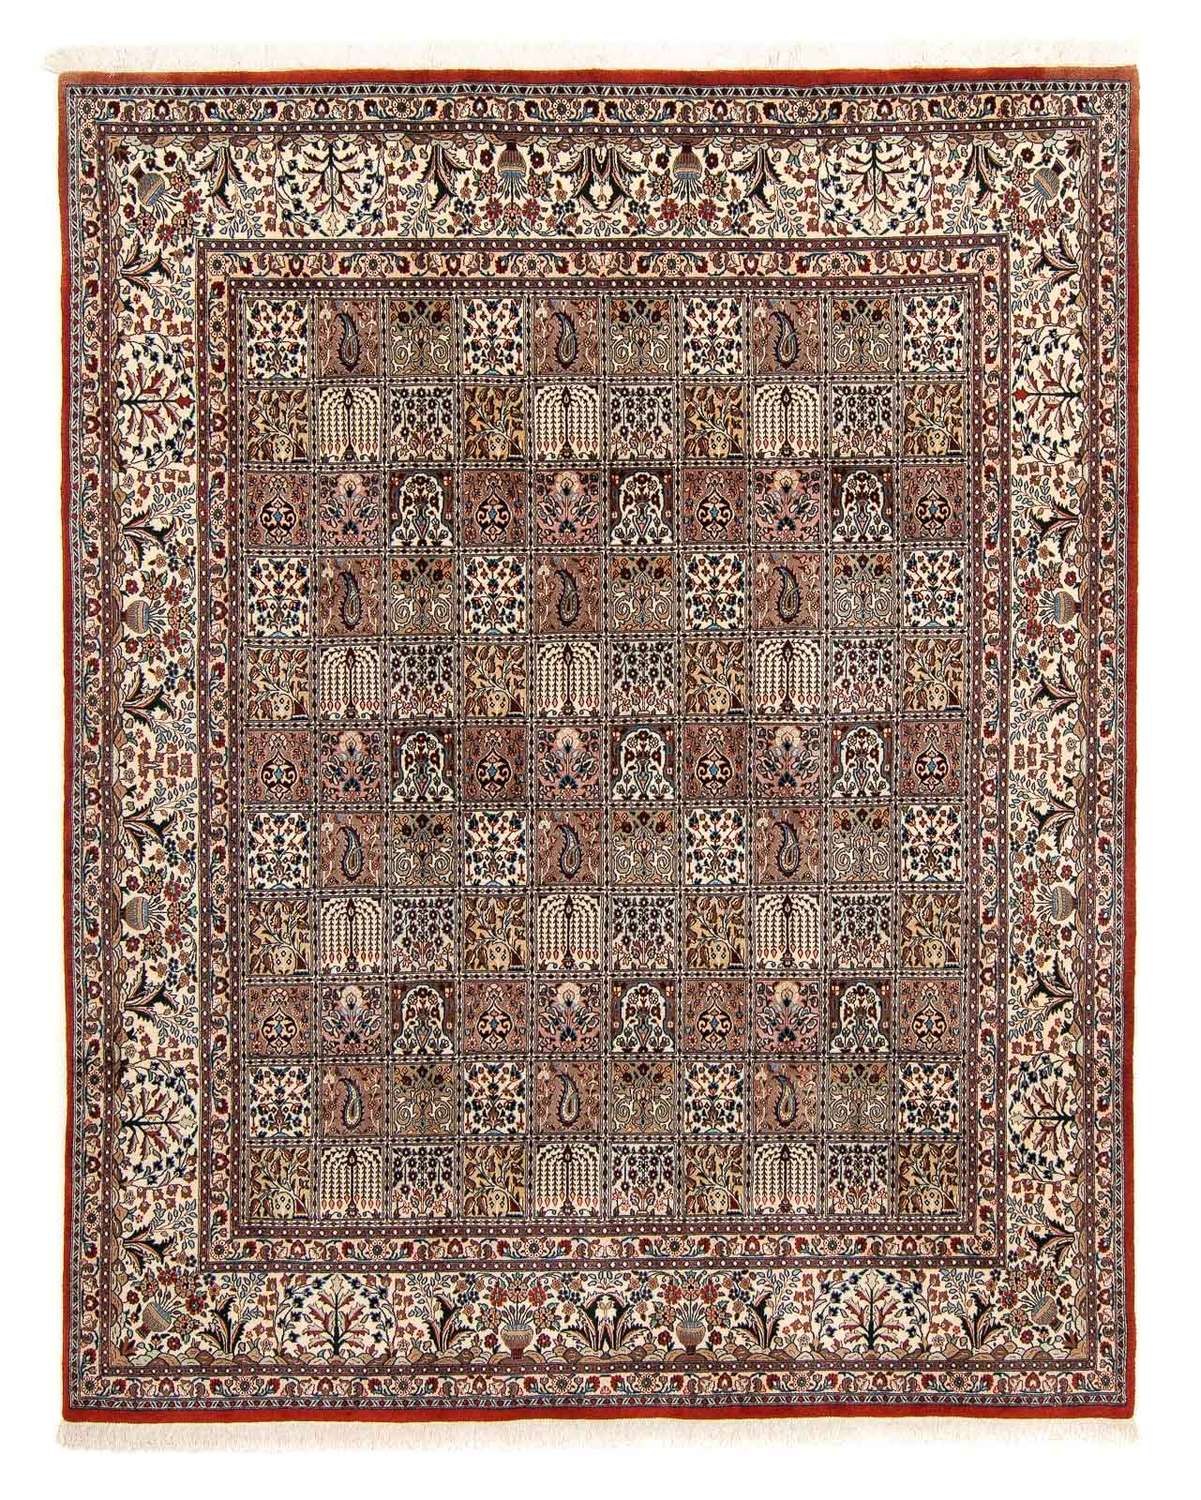 Tapis persan - Classique - 301 x 246 cm - multicolore